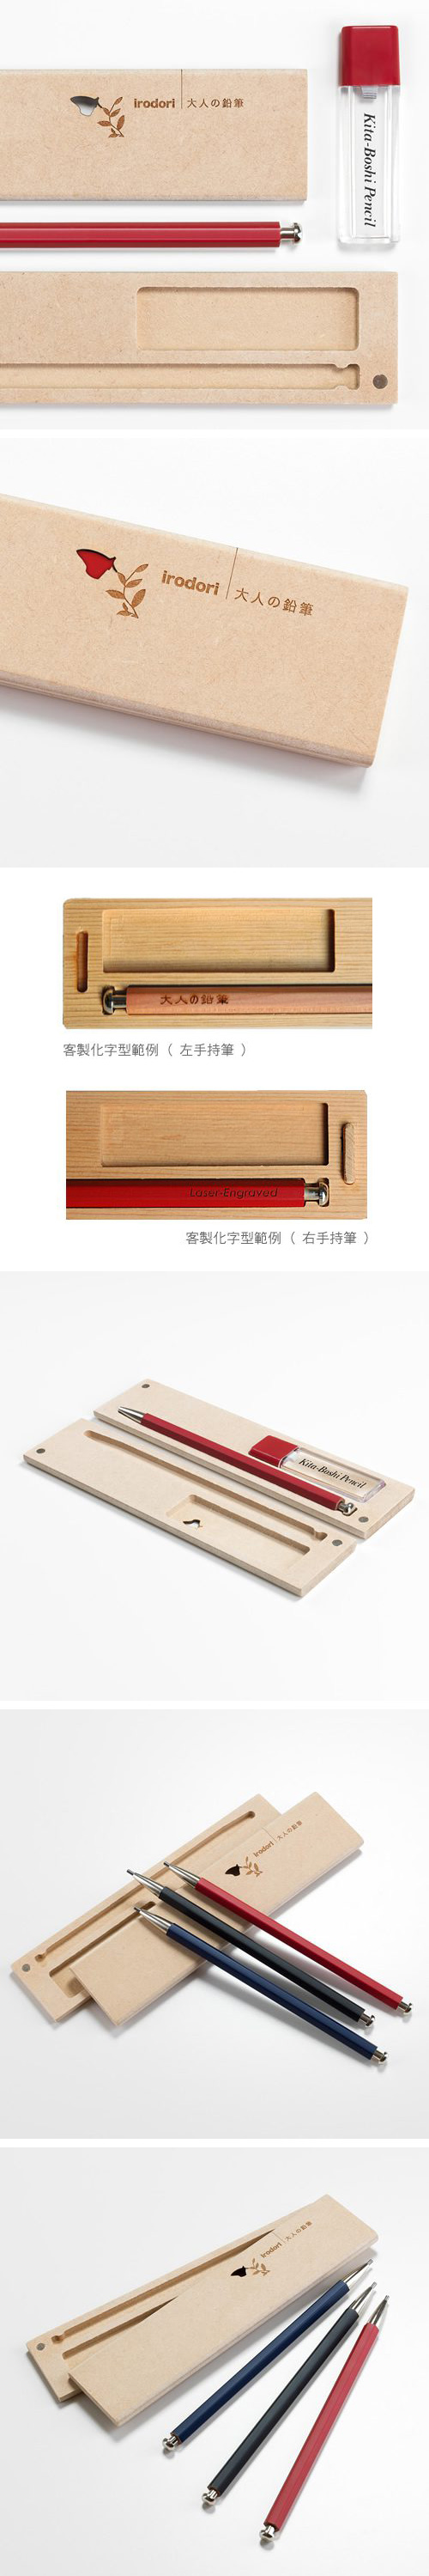 【可雷雕】北星大人鉛筆 彩 木質筆盒組 紅色